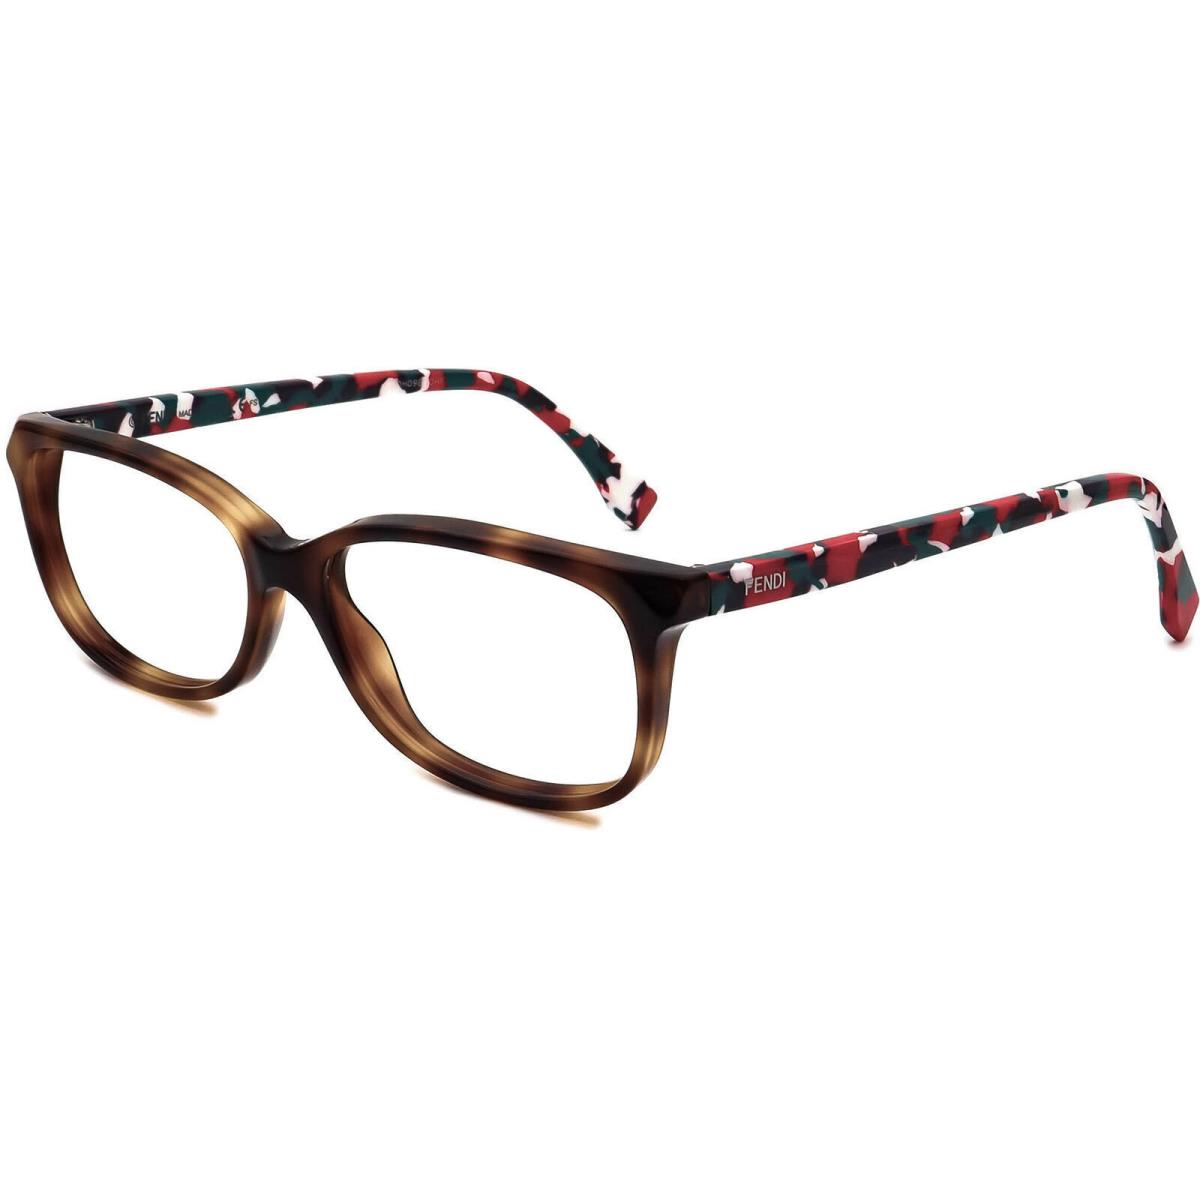 Fendi eyeglasses TTR - Brown Frame 0